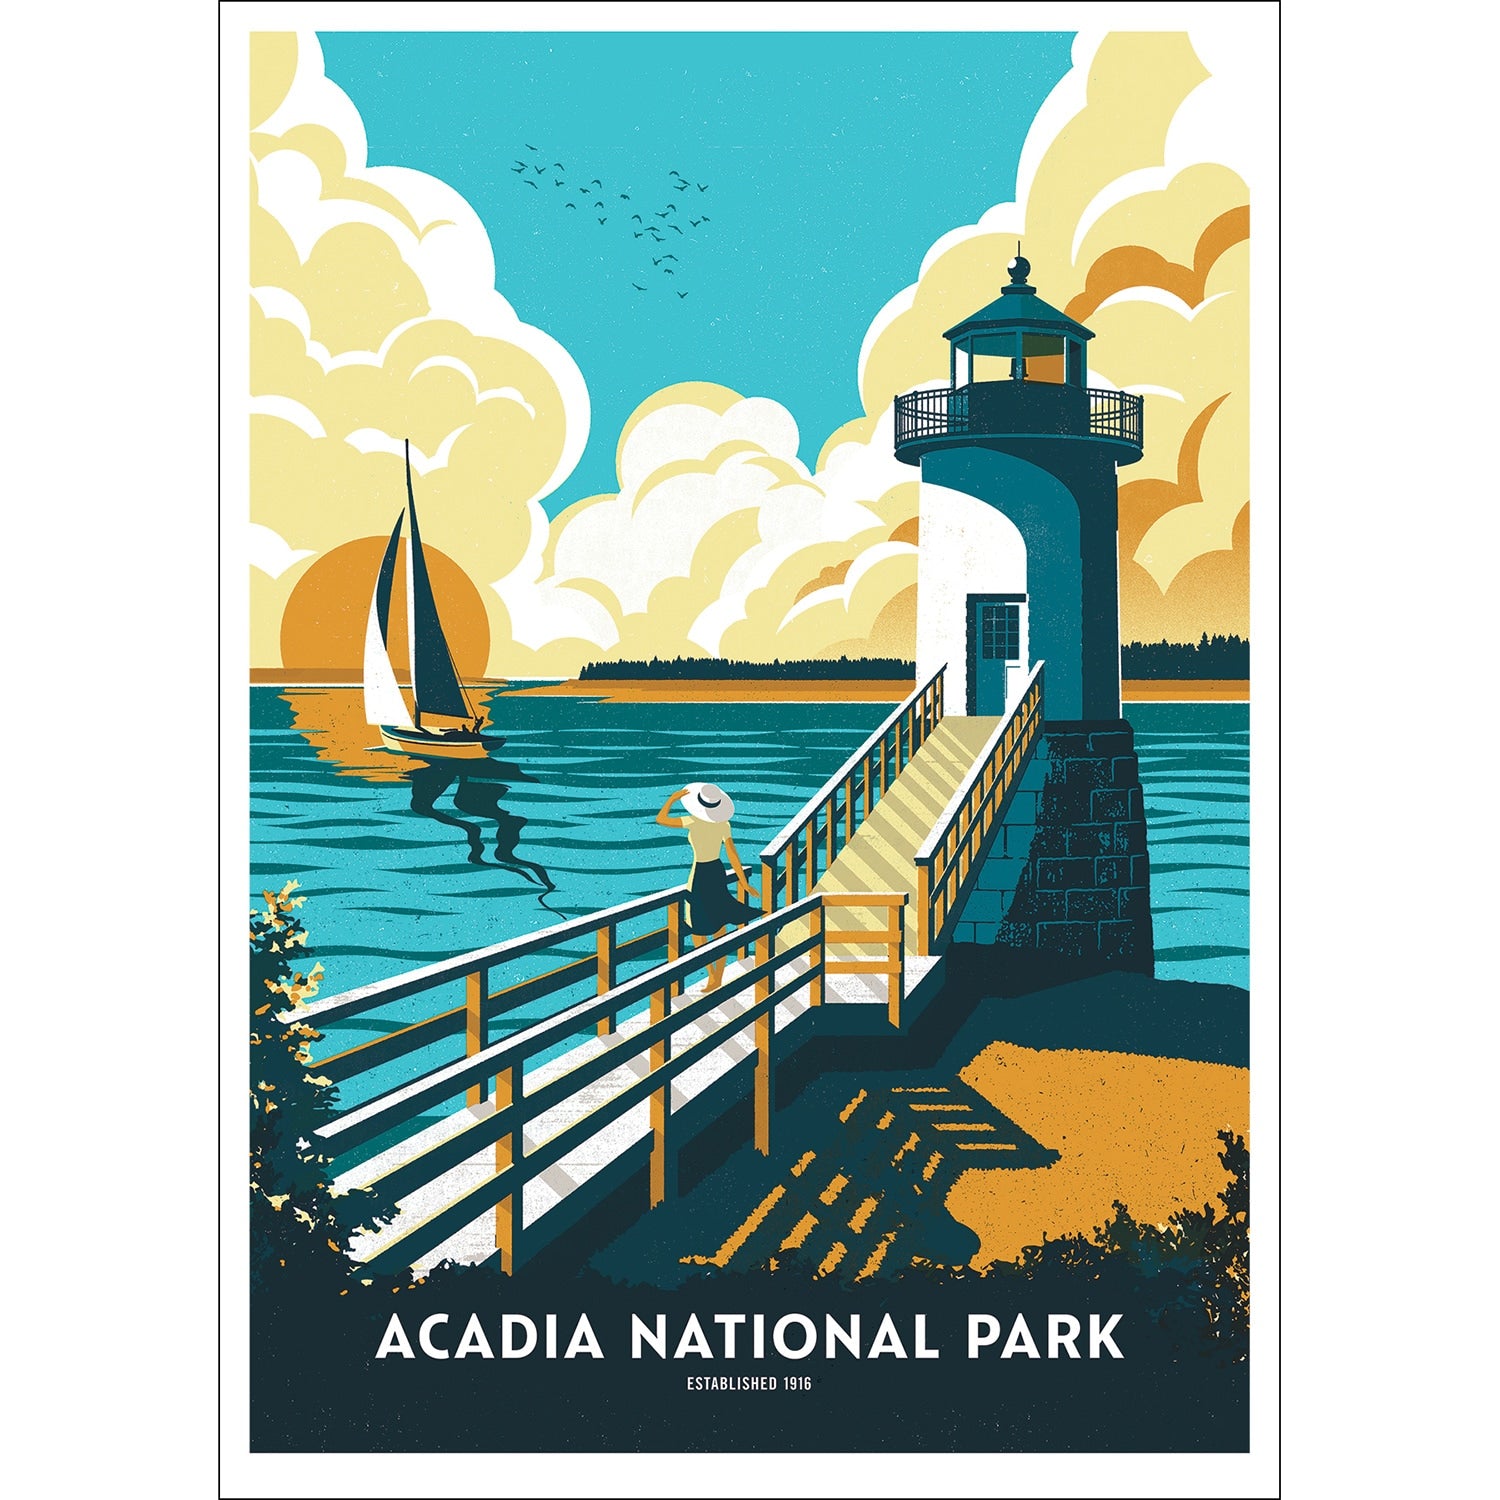 100 Postcards of National Parks